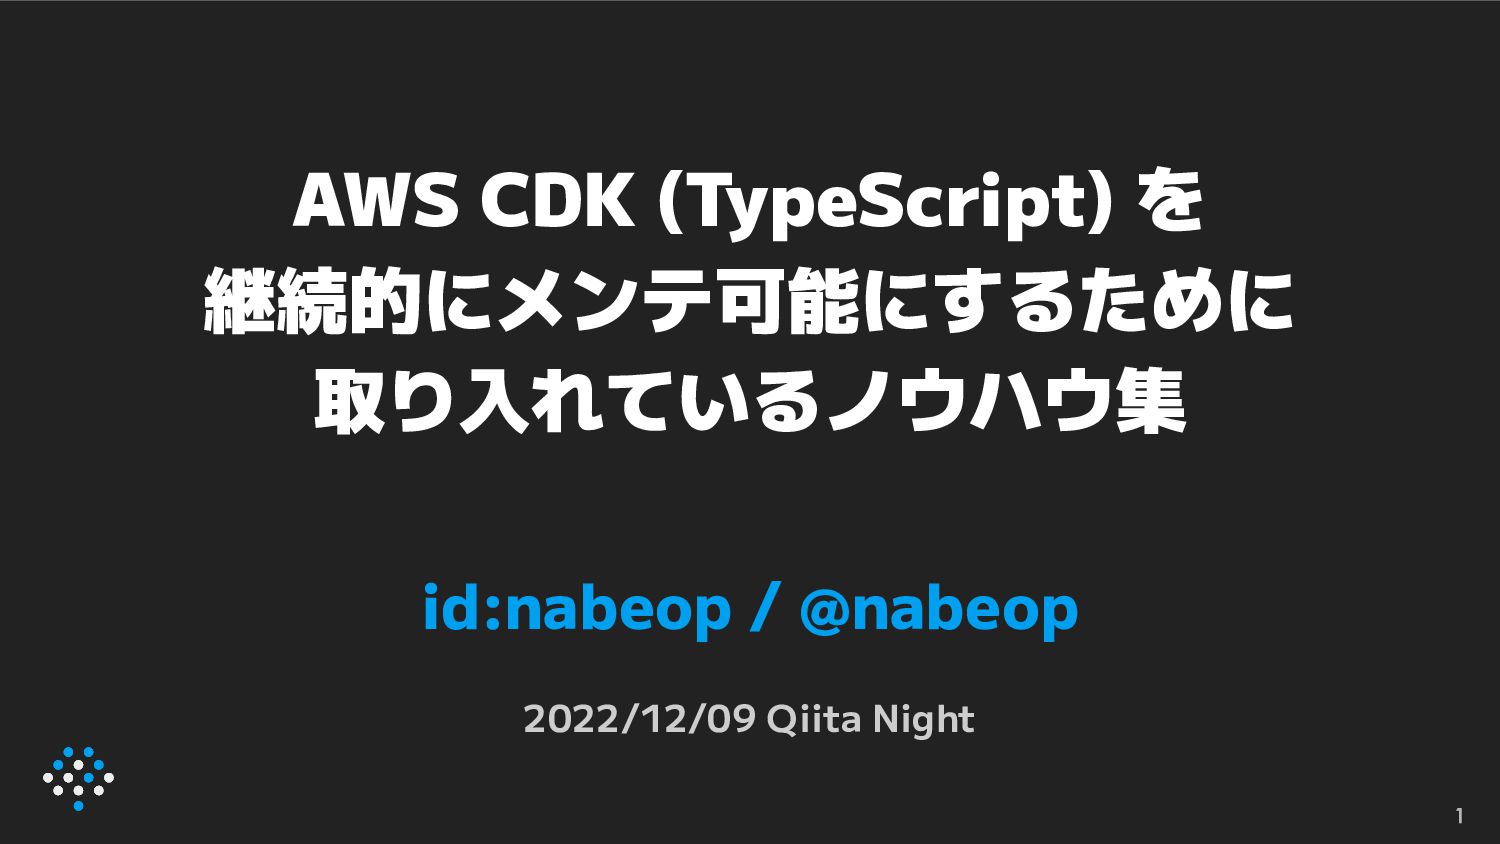 AWS CDK (TypeScript) を継続的にメンテ可能にするために取り入れているノウハウ集